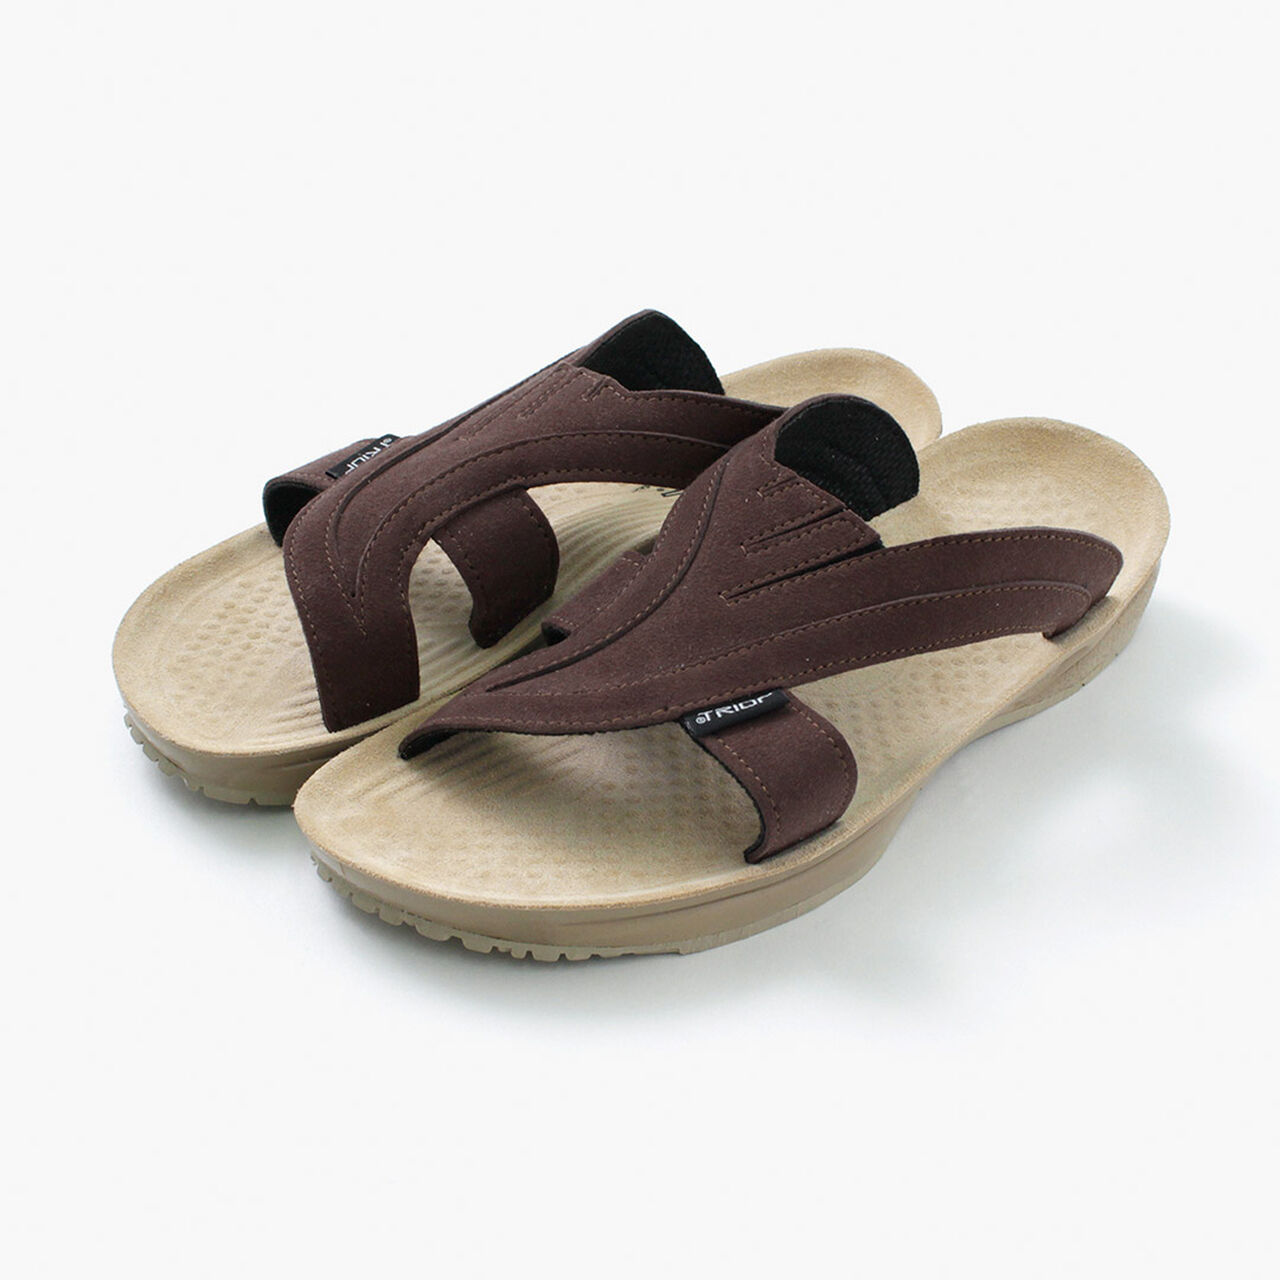 API Sandals,Brown, large image number 0